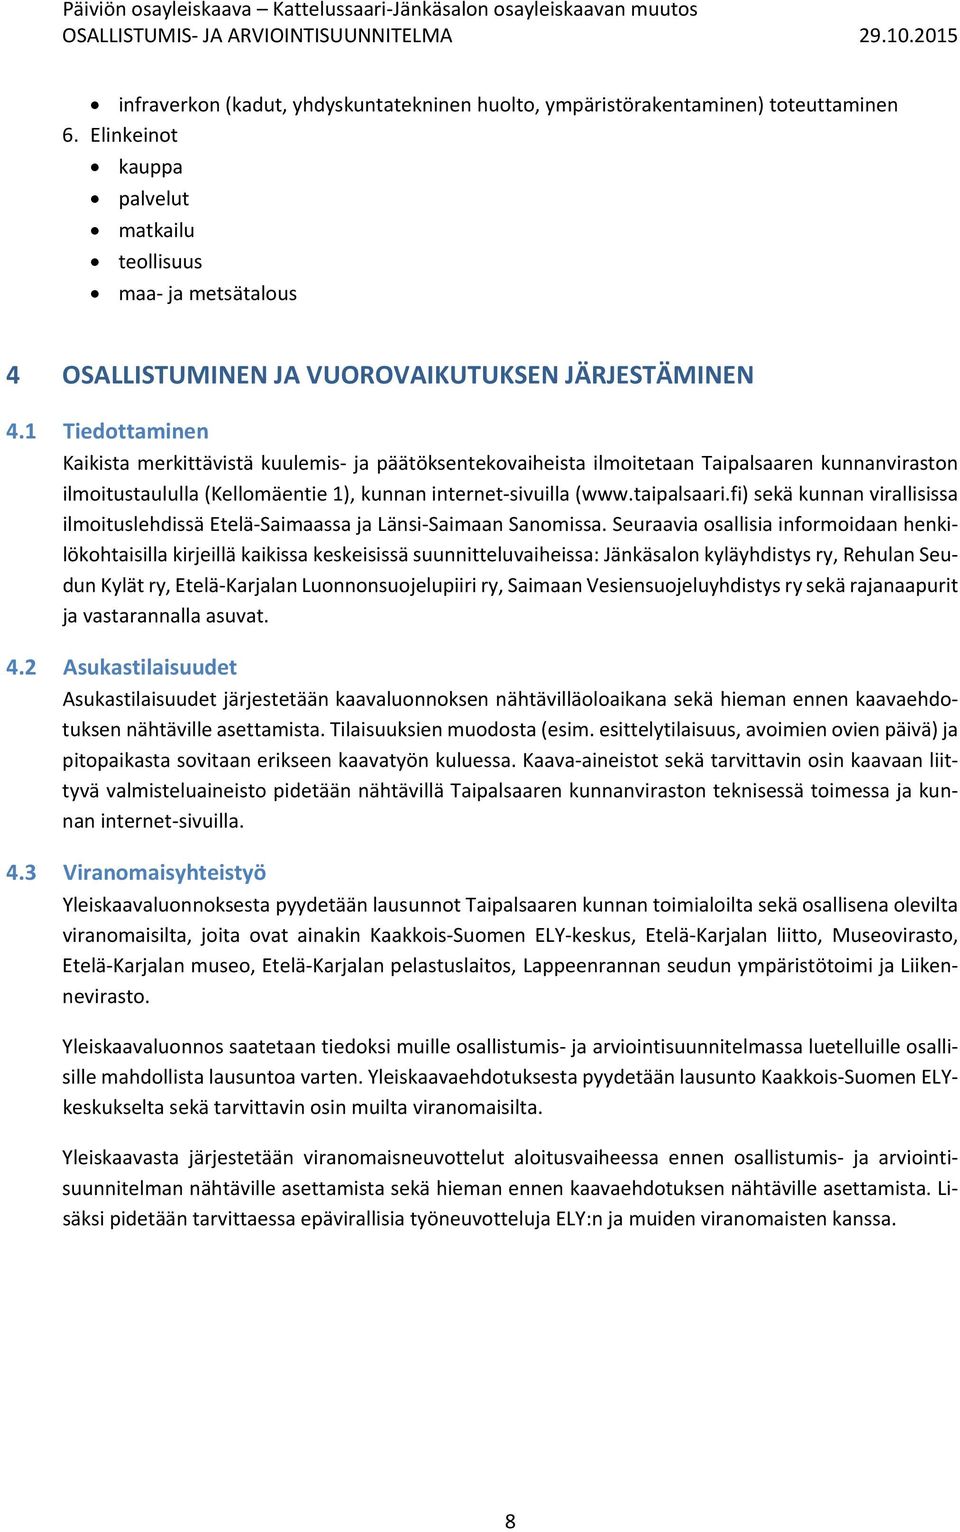 1 Tiedottaminen Kaikista merkittävistä kuulemis ja päätöksentekovaiheista ilmoitetaan Taipalsaaren kunnanviraston ilmoitustaululla (Kellomäentie 1), kunnan internet sivuilla (www.taipalsaari.